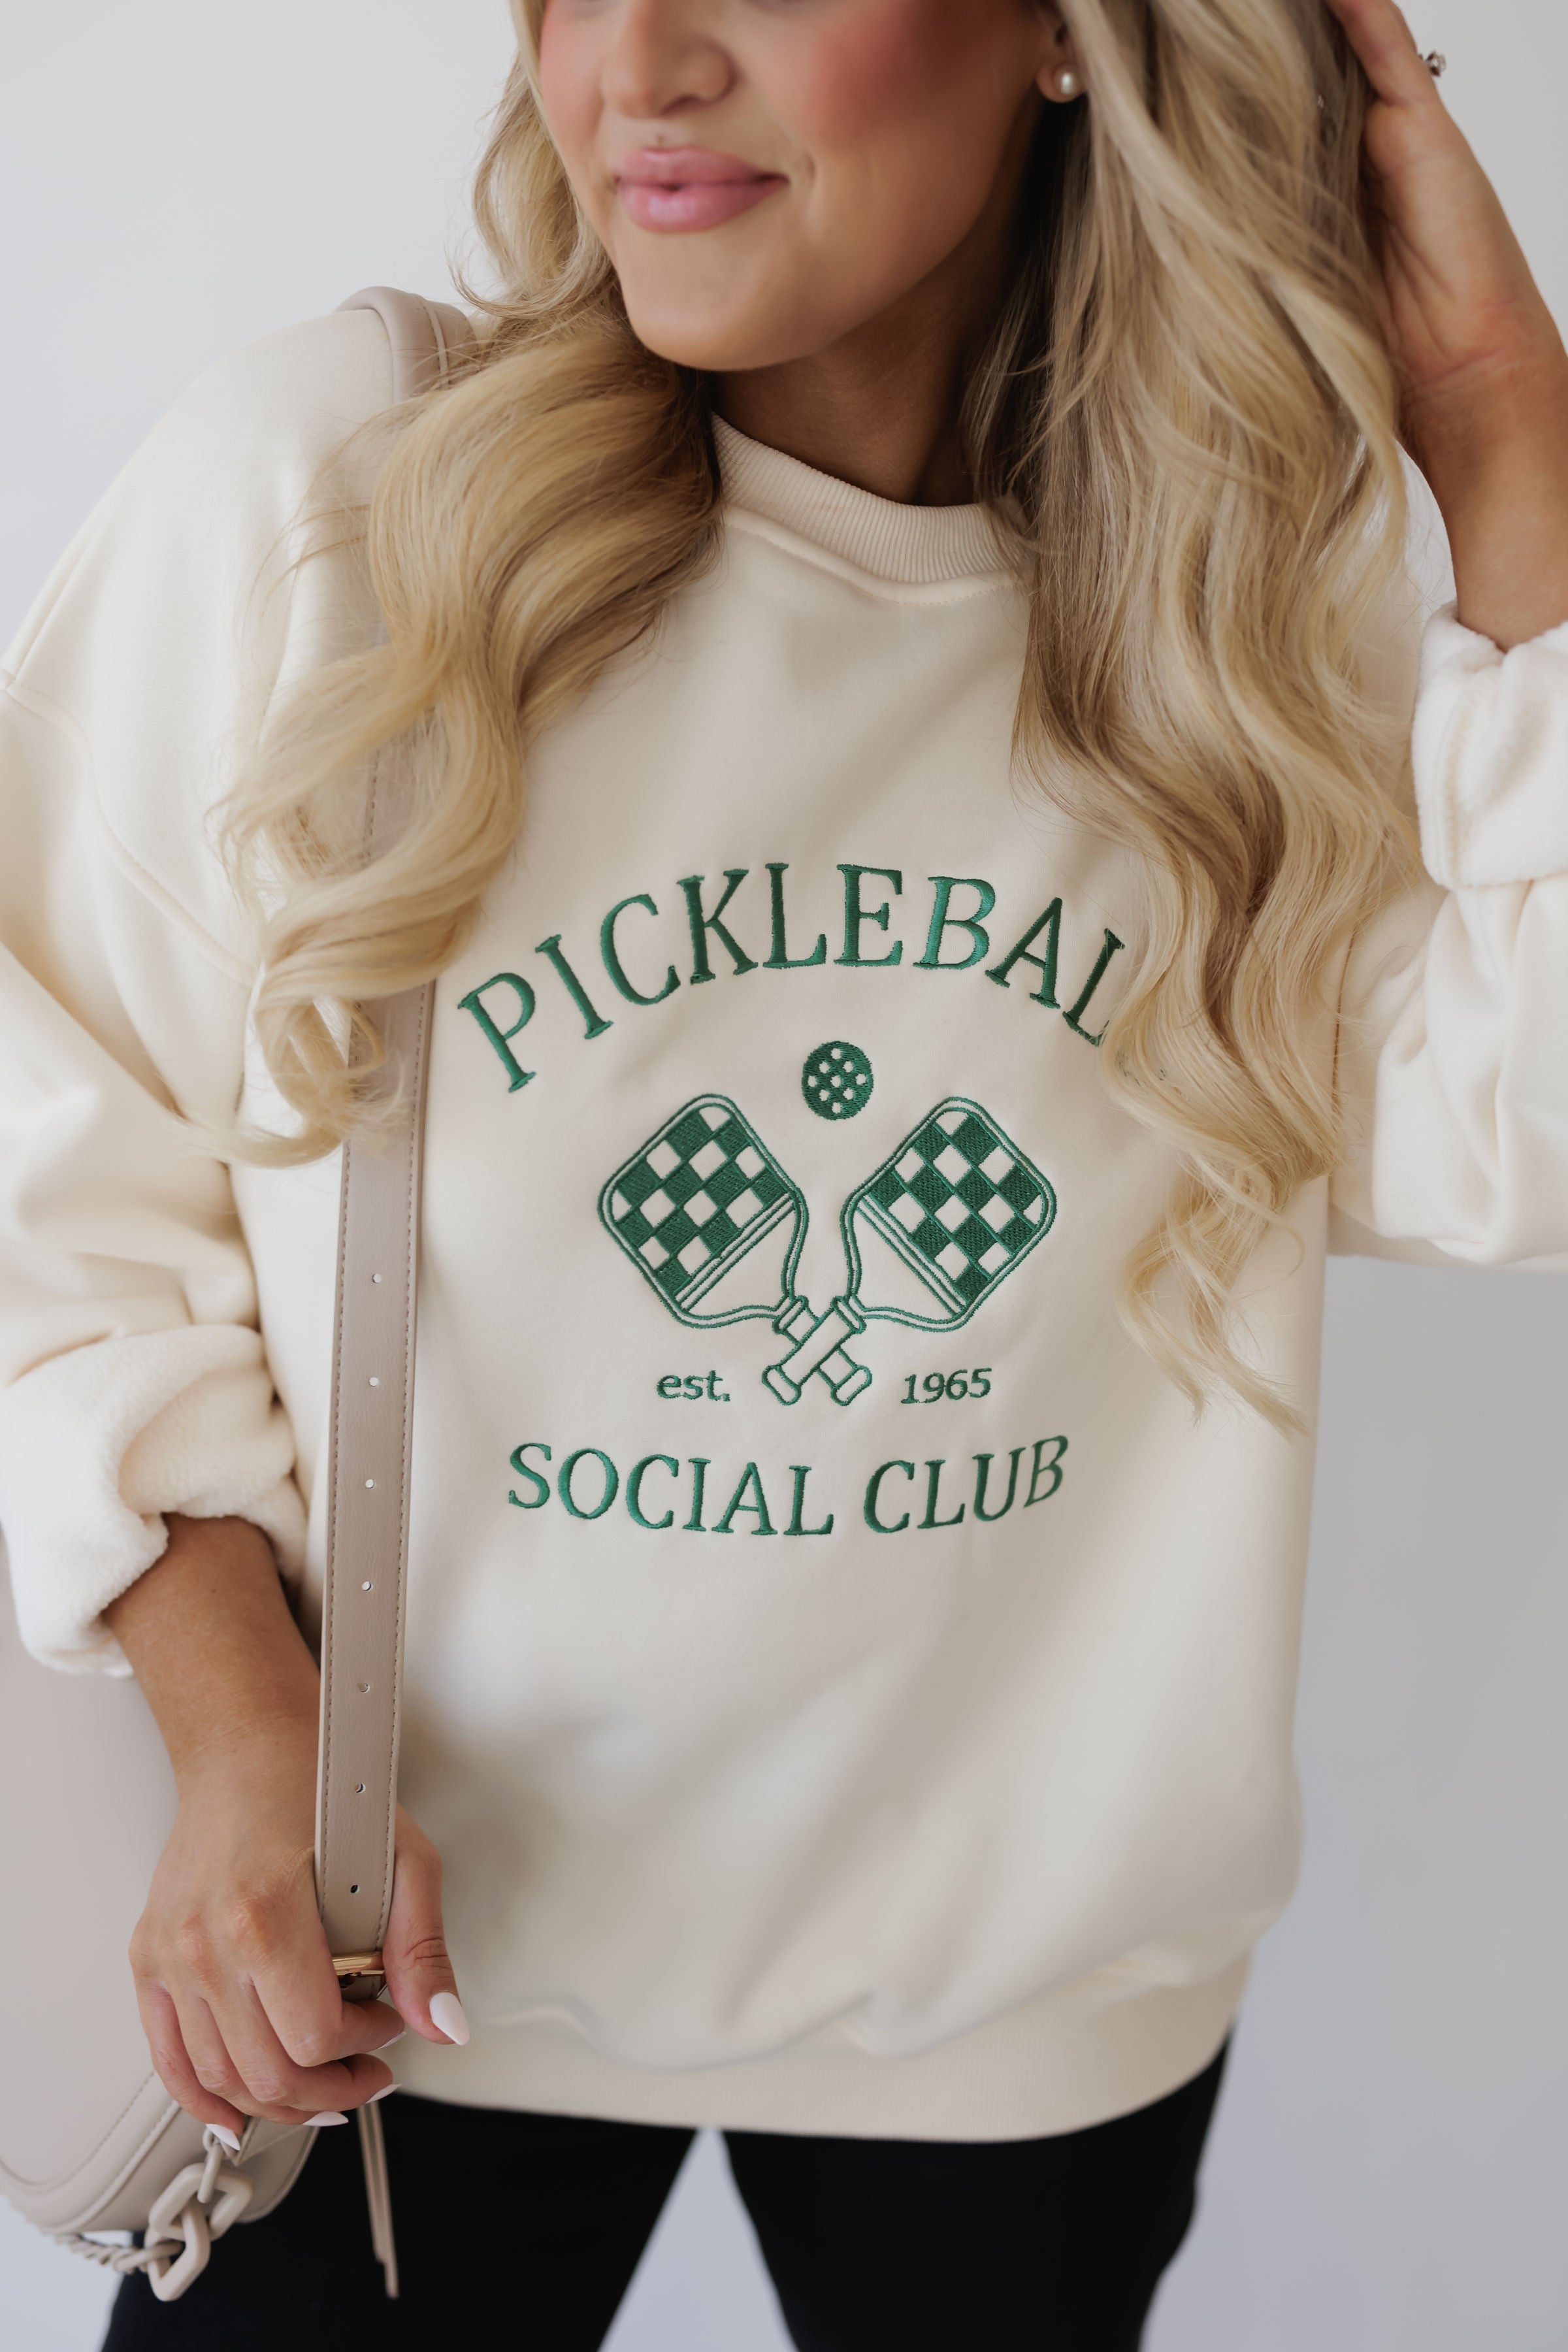 Pickleball Social Club Sweatshirt